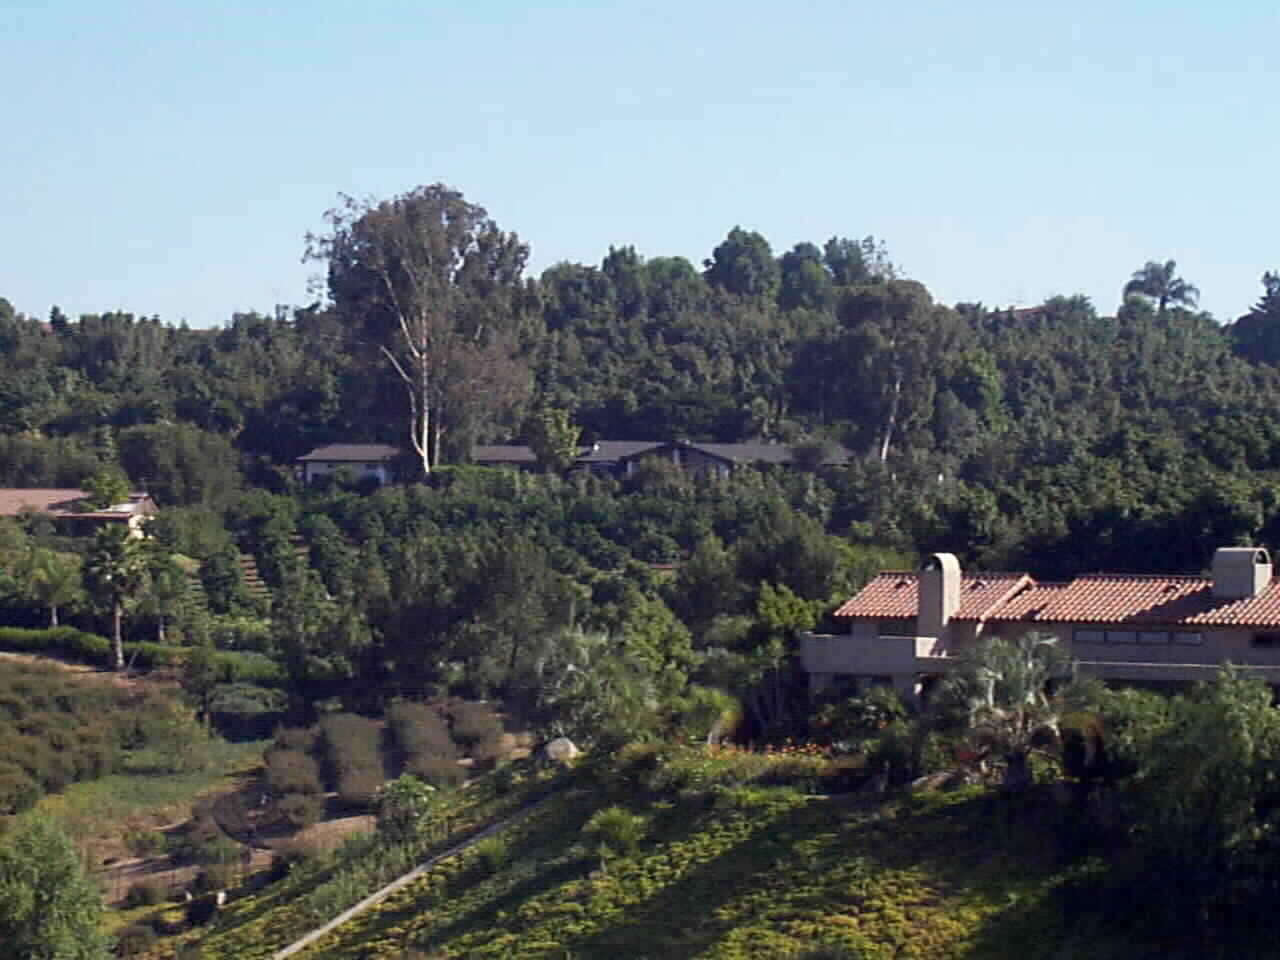 View from across the Valley of 6447 Via De La Reina